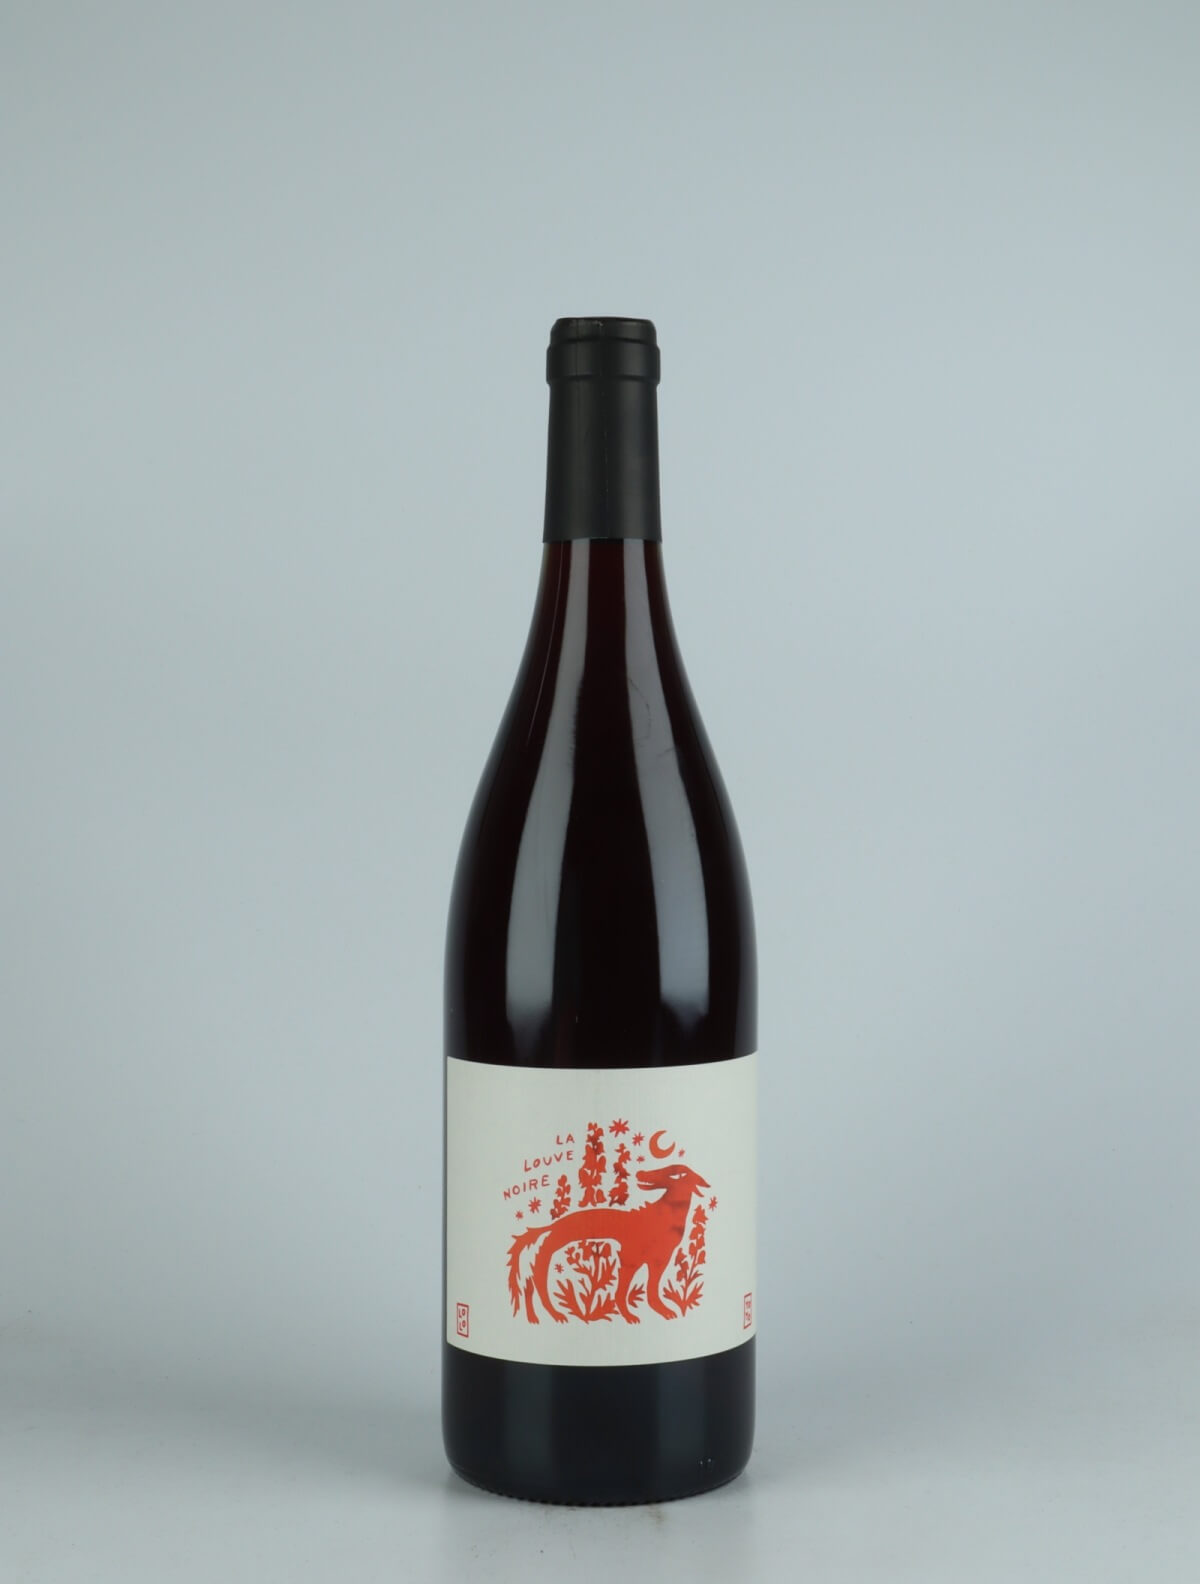 En flaske 2021 La Louve Noire Rødvin fra Domaine Yoyo, Rousillon i Frankrig